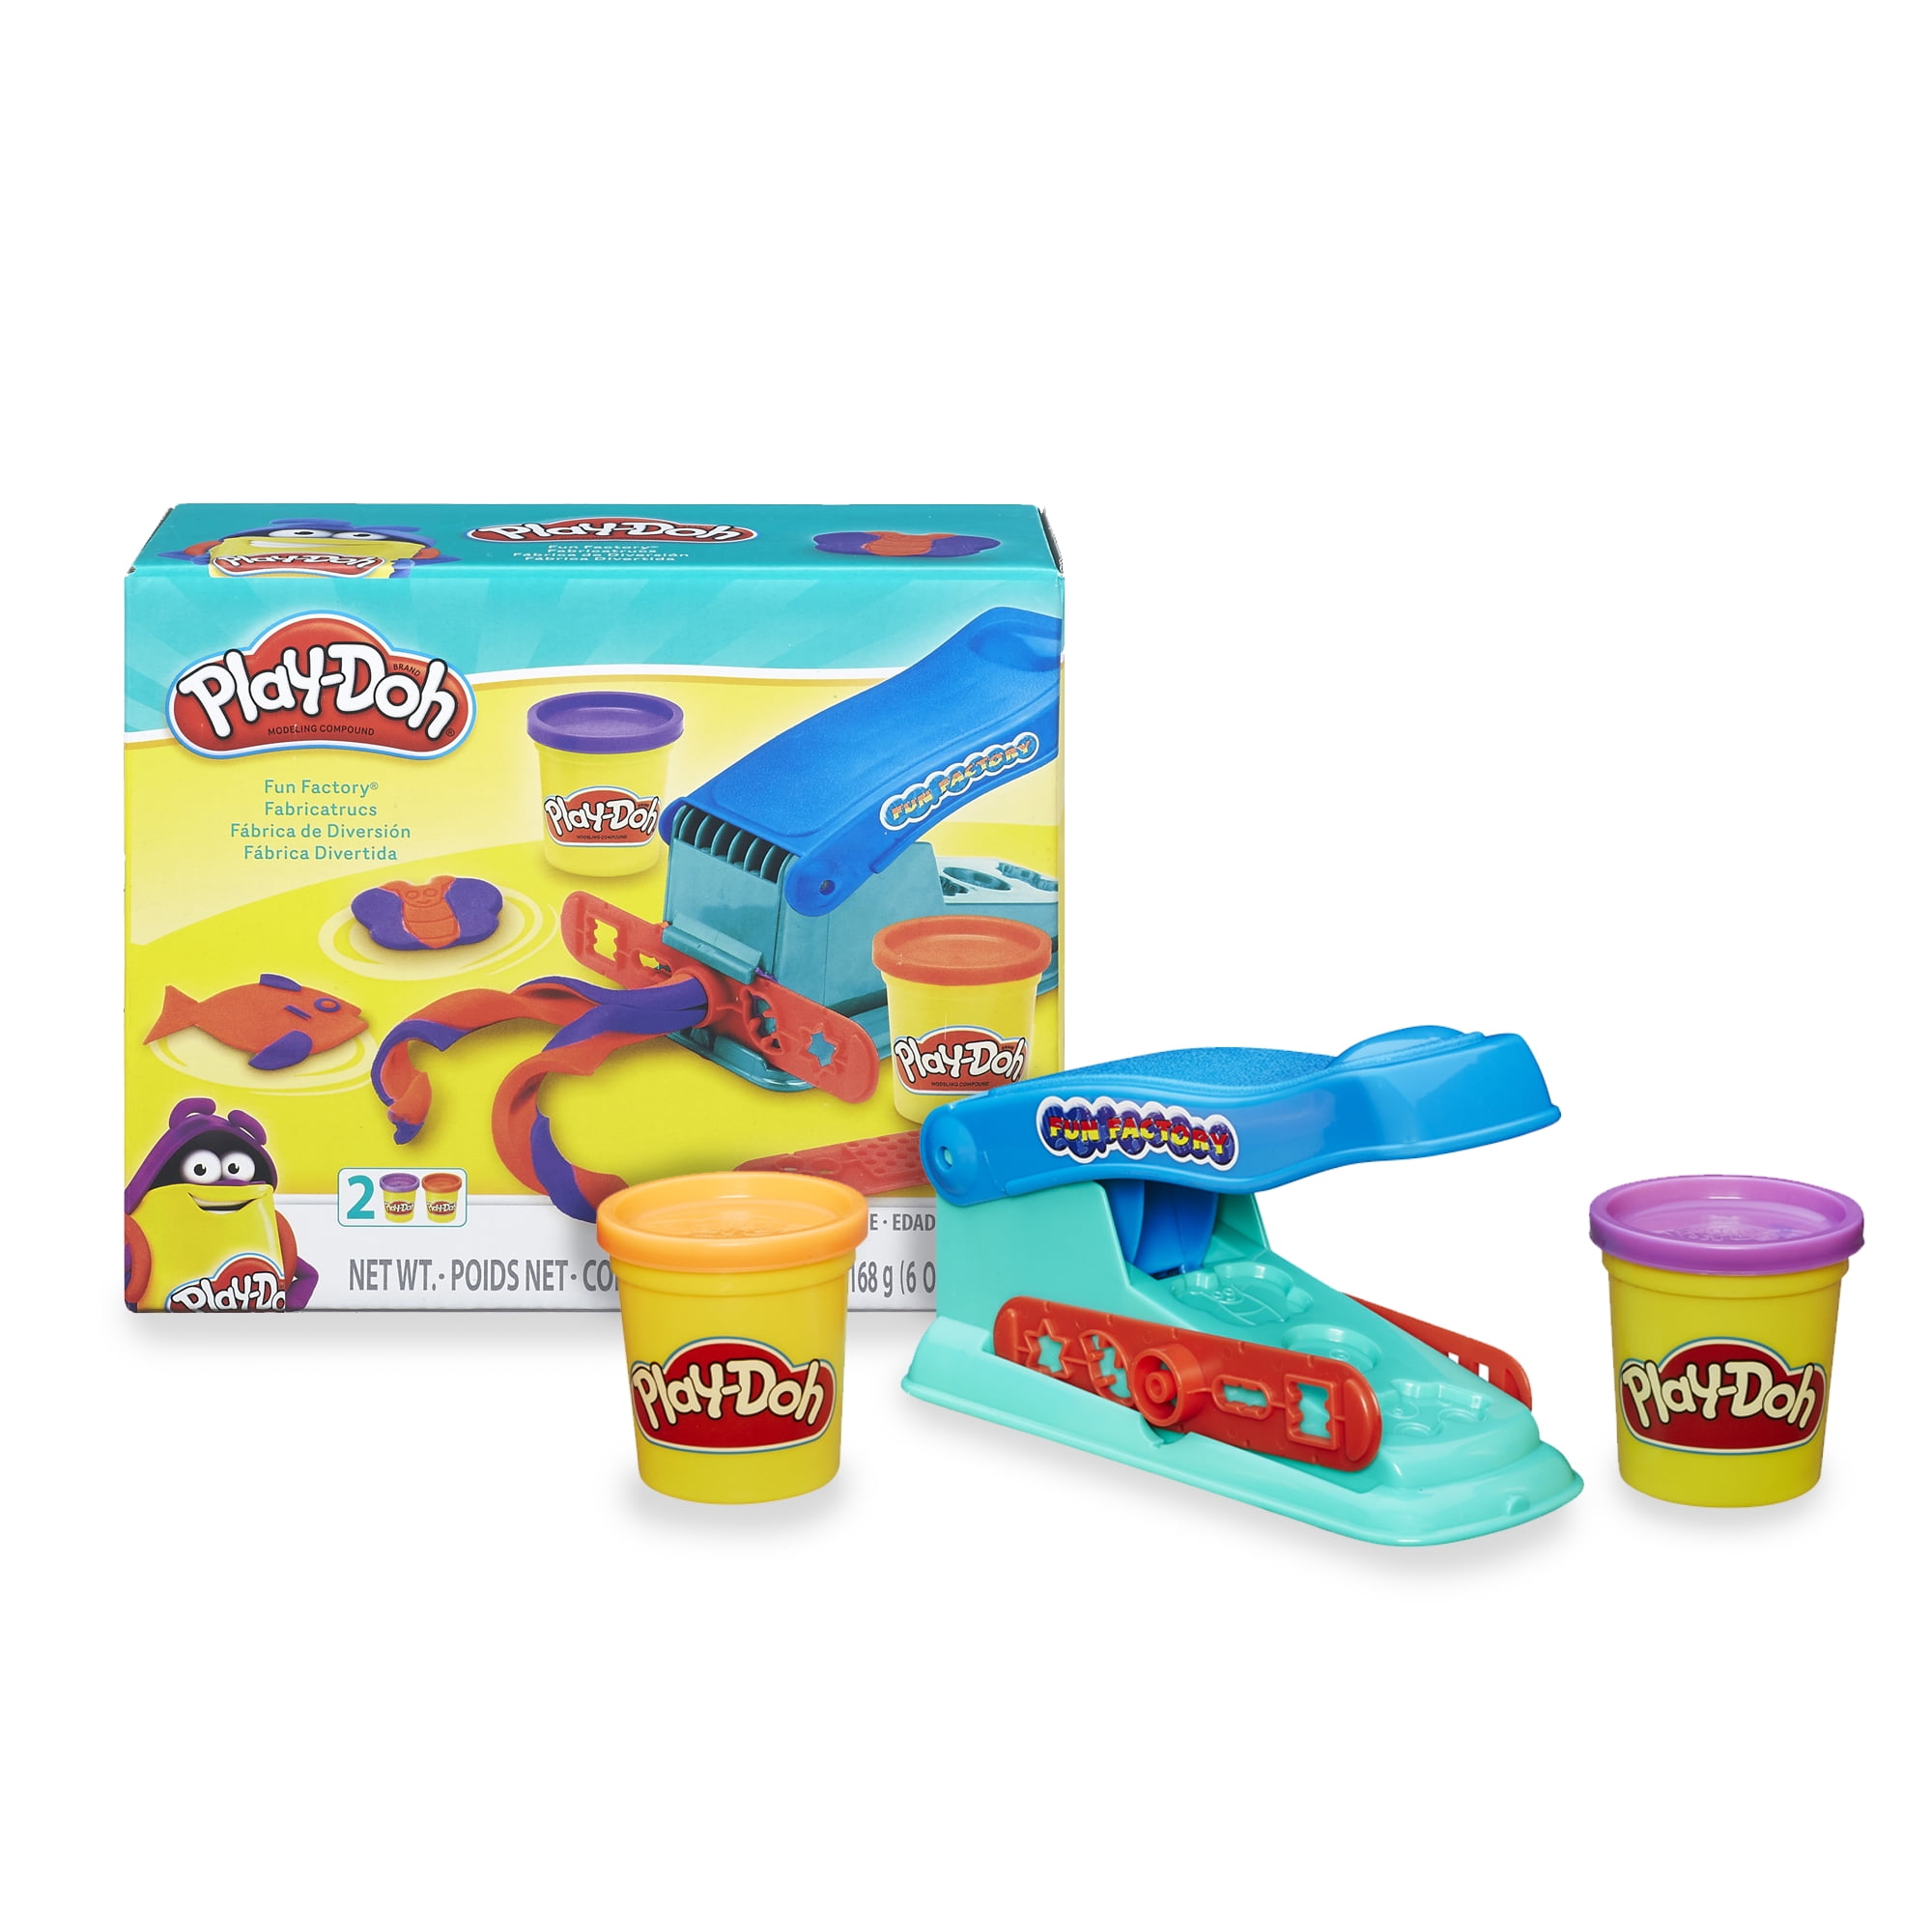 Play Doh Dough Clay Fun Factory Toy Kids Boys Game Playdough Gift Set Safe Color 